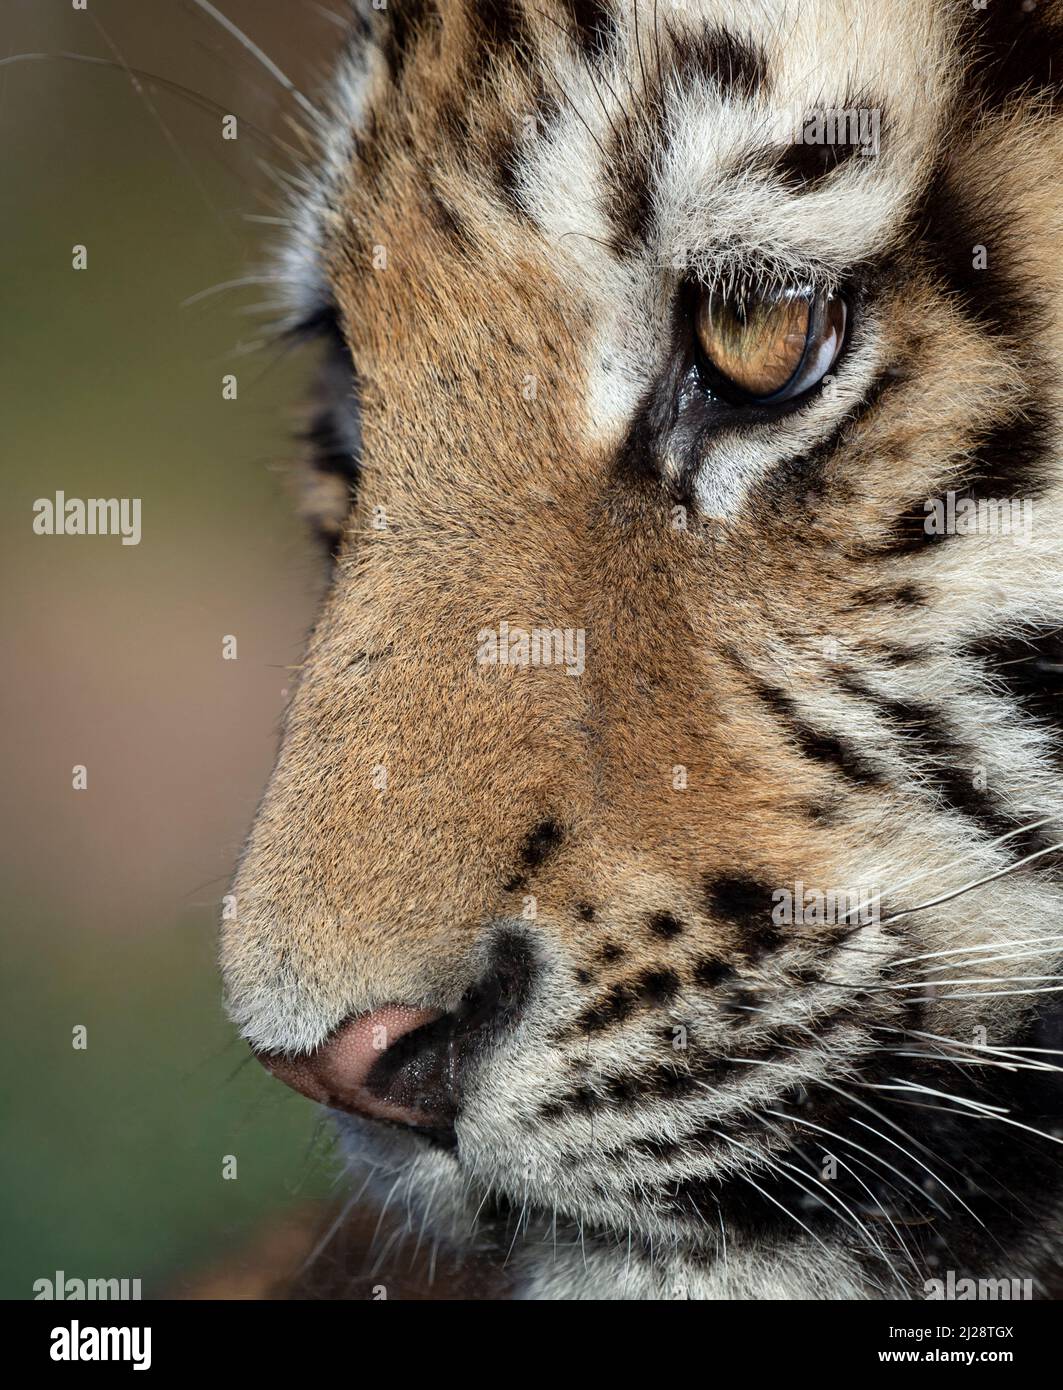 Amur tiger cub (profile, close-up) Stock Photo